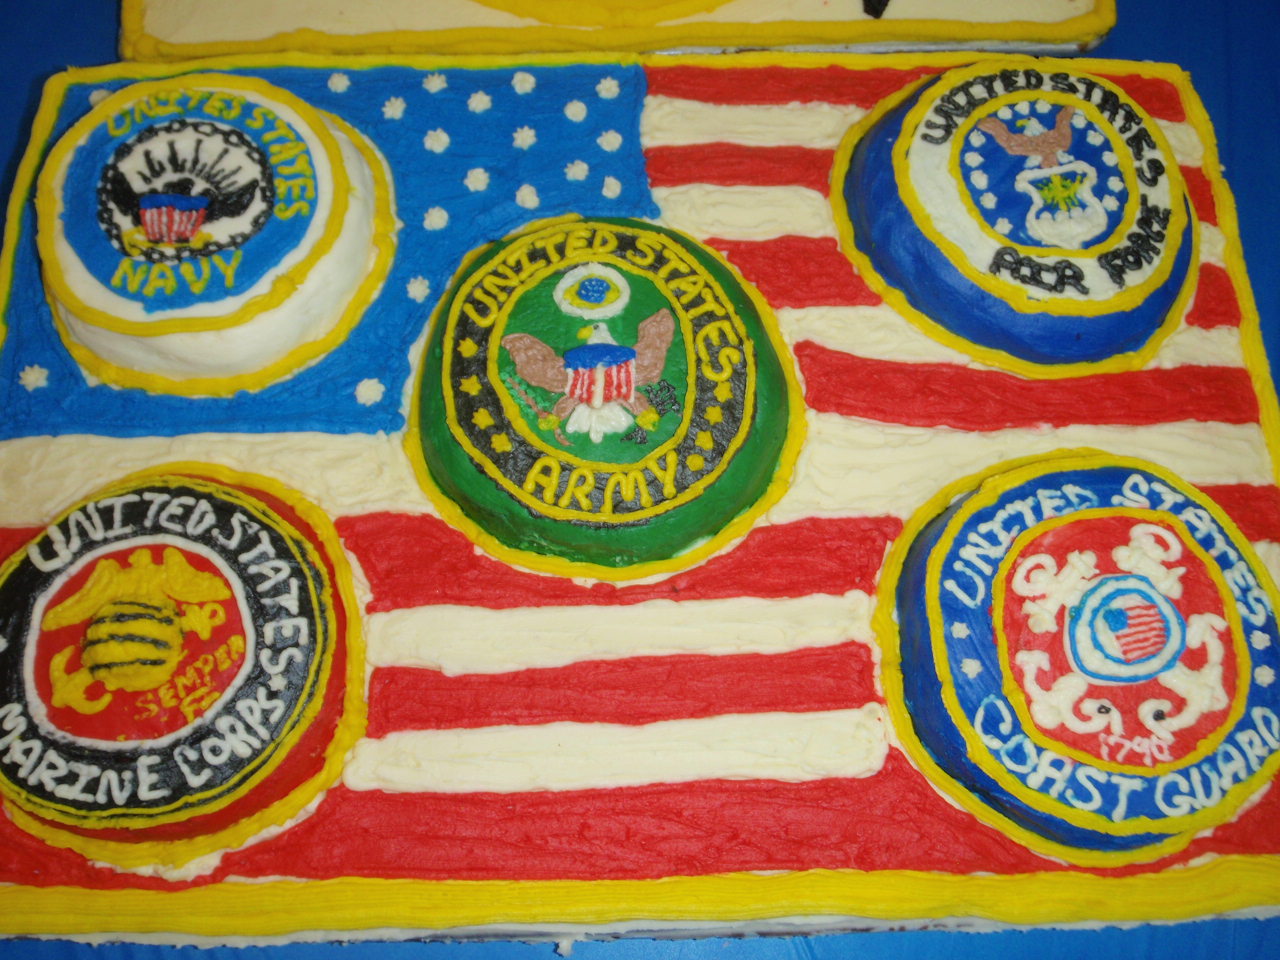 A patriotic cake